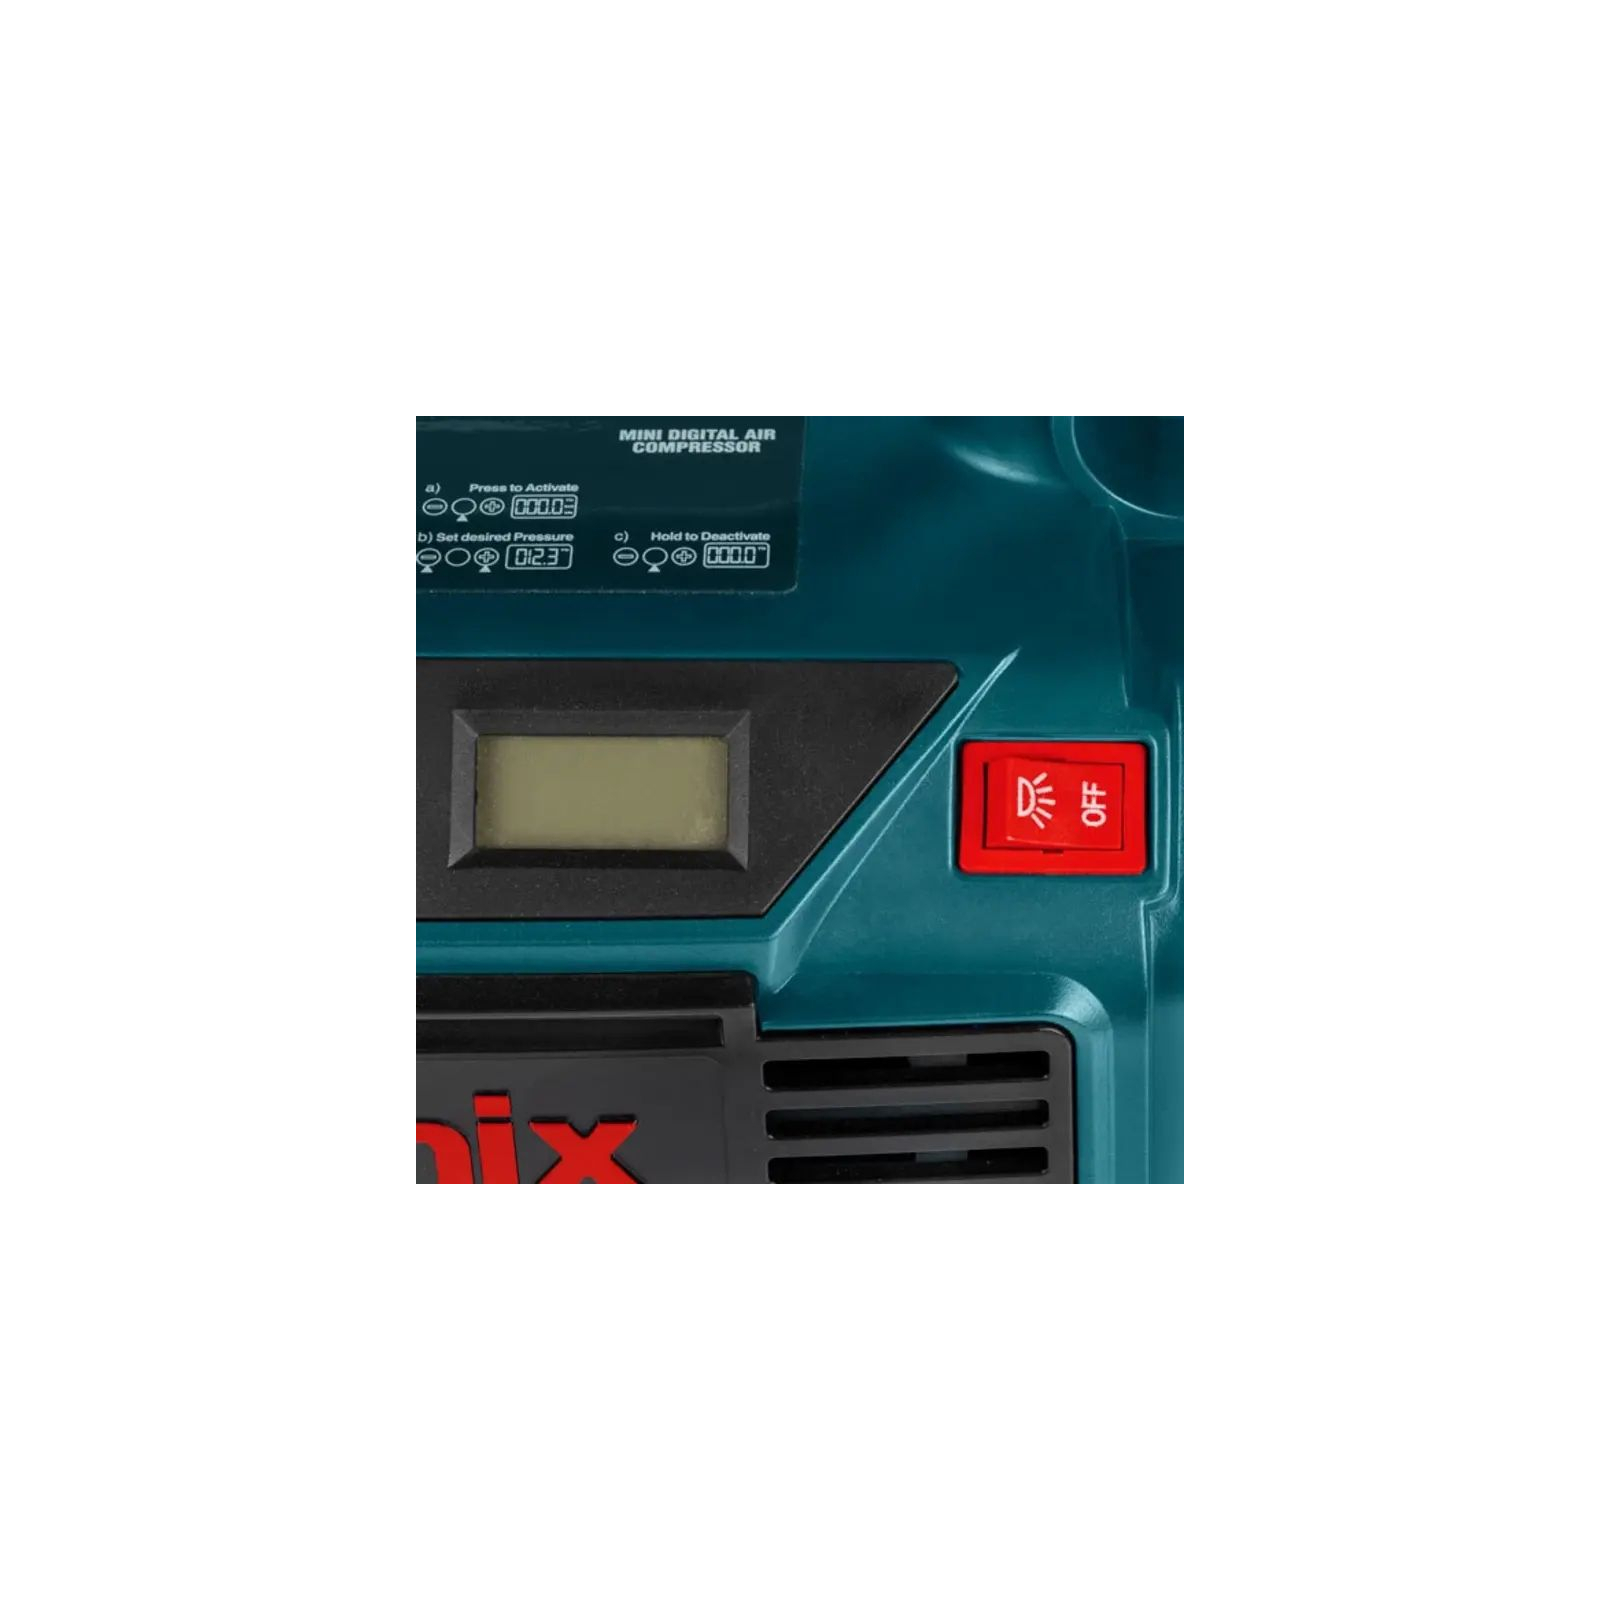 Автомобильный компрессор Ronix цифровой 12В, 160 PSI (RH-4260) изображение 5